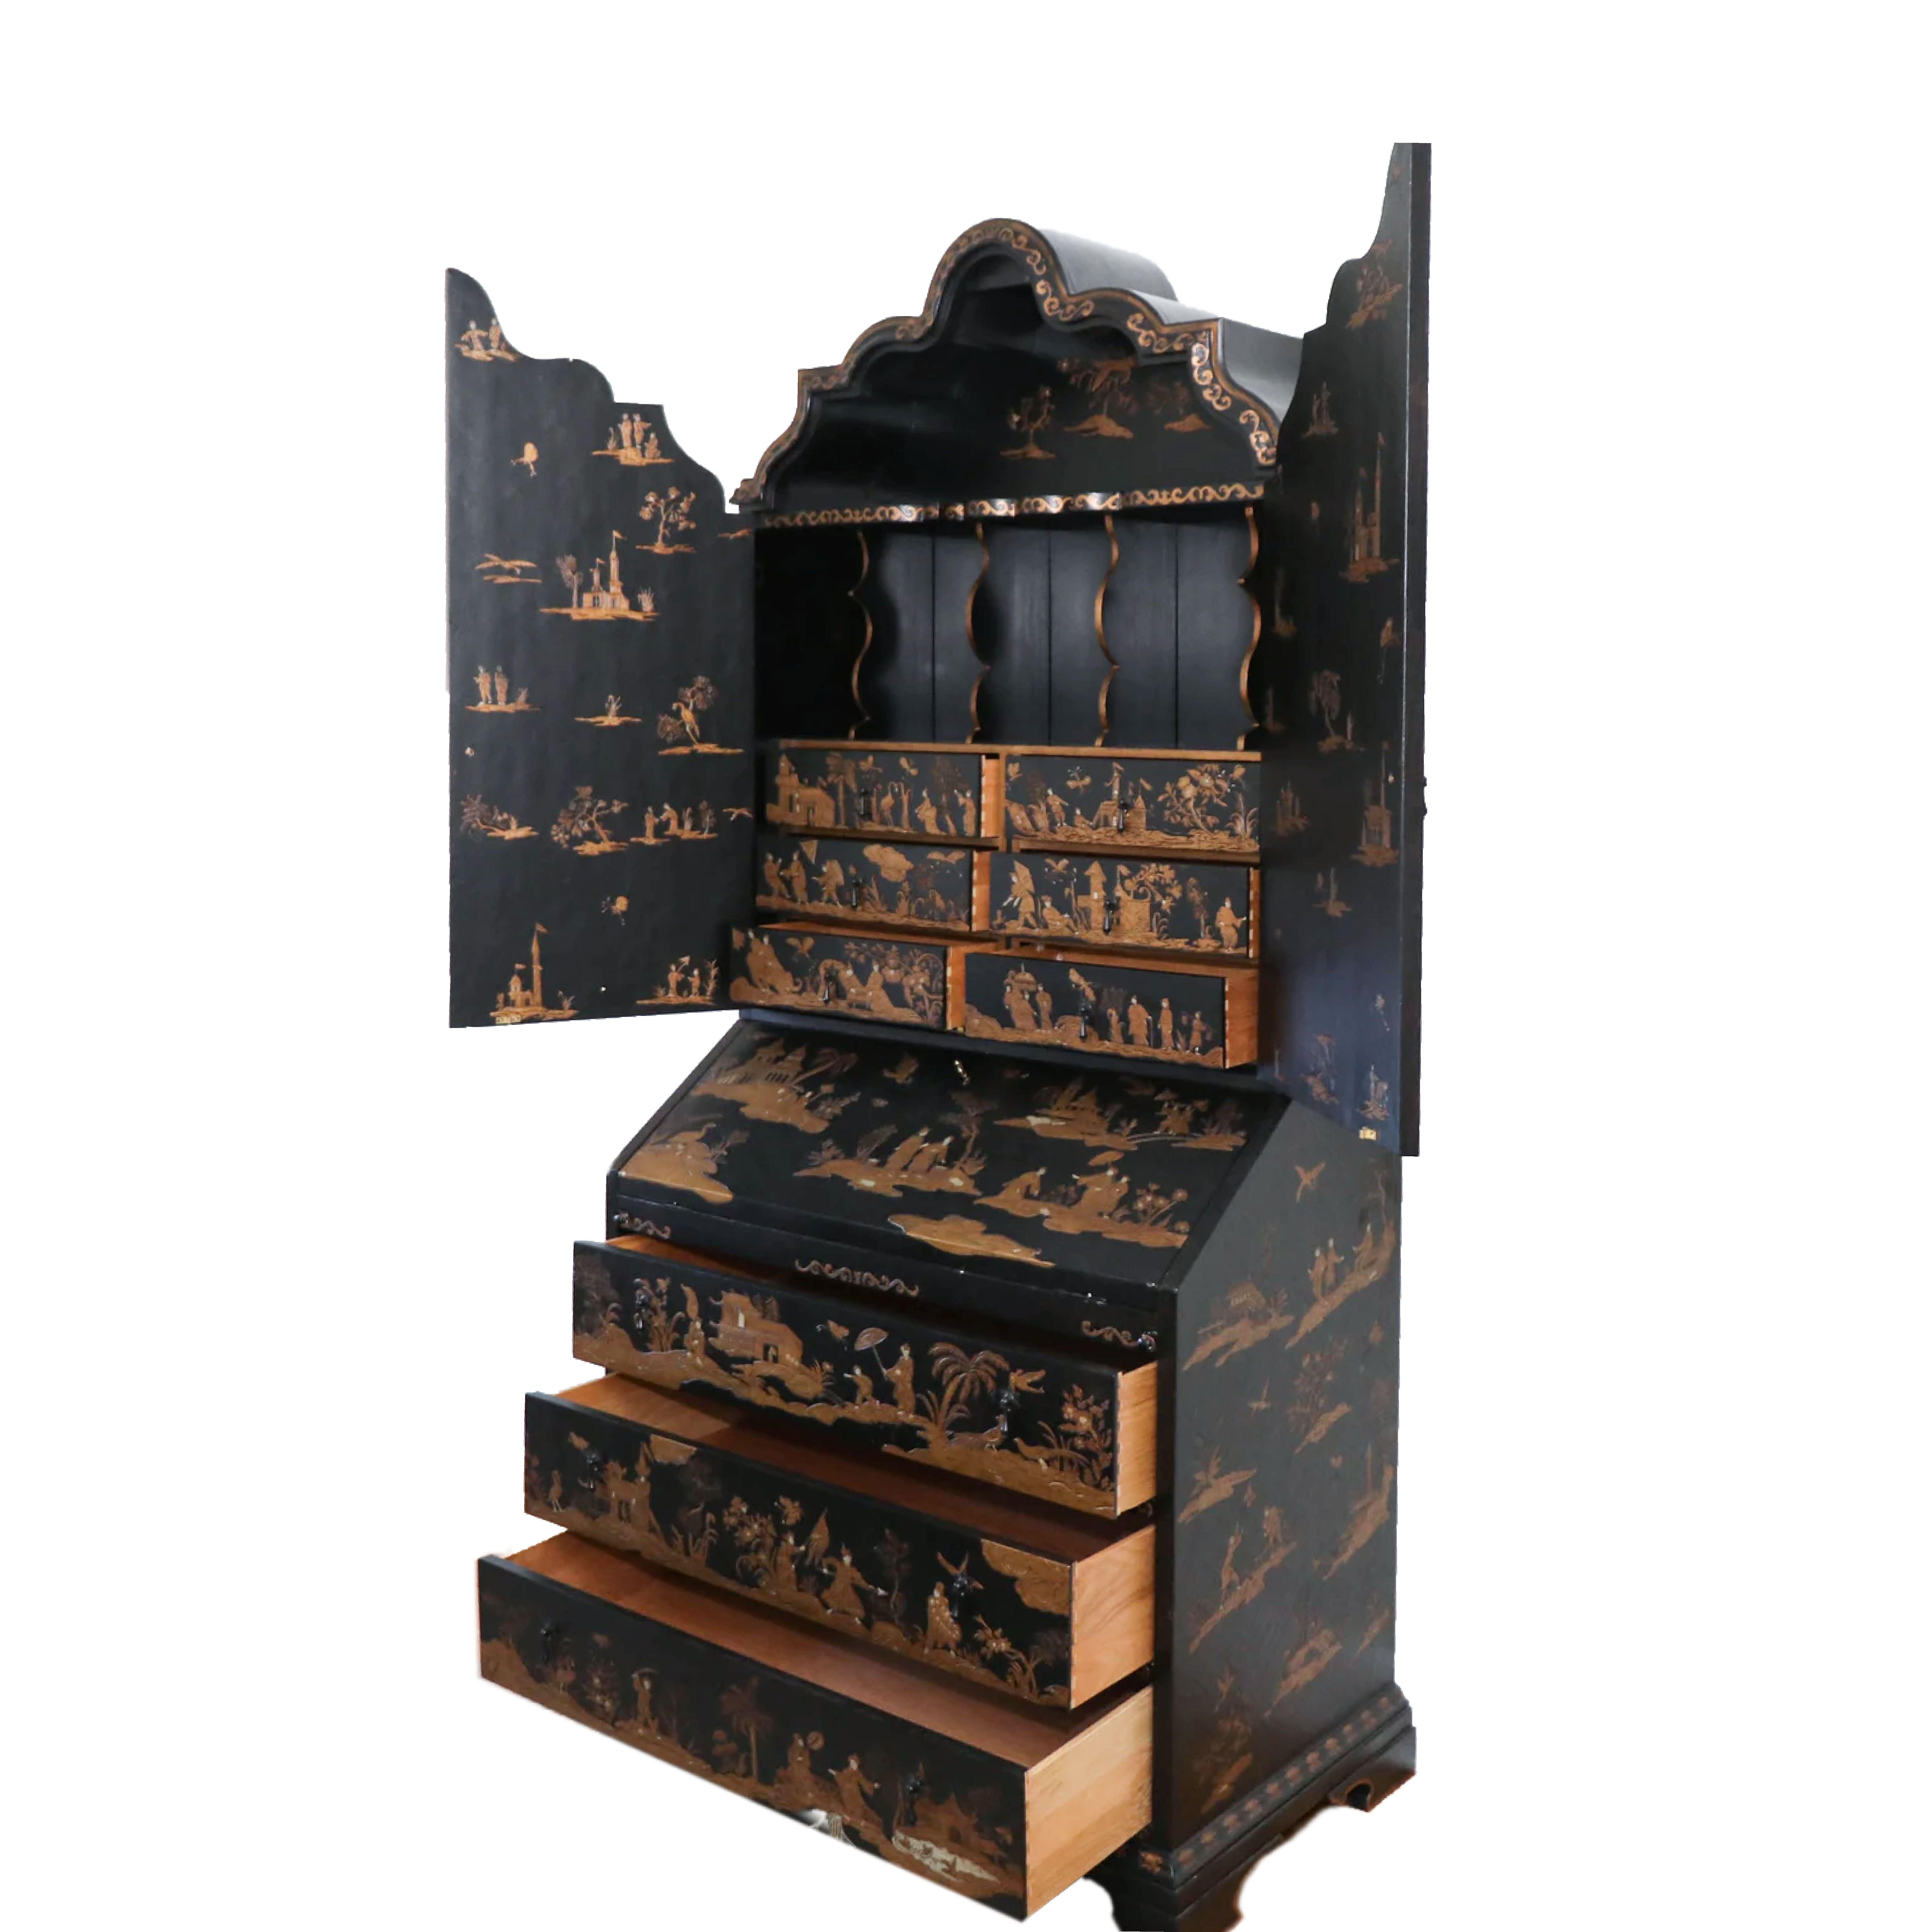 Ebonized Baker Furniture Company Black Japanned Chinoiserie Venetian Secretary Desk, Gilt